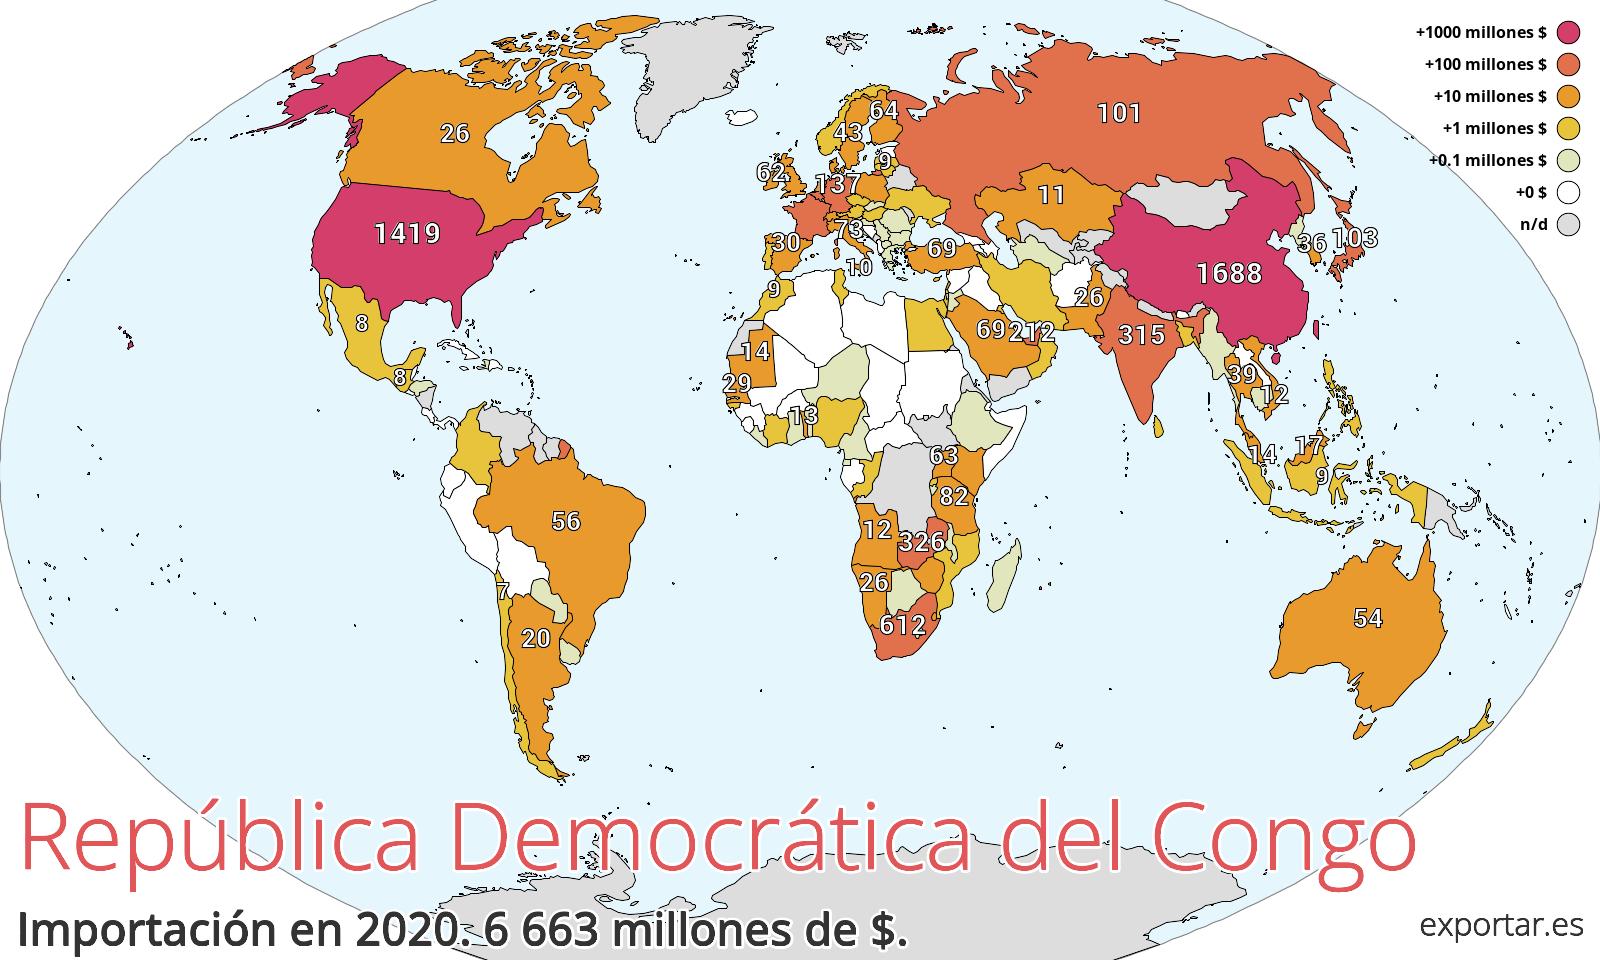 Mapa de importación de República Democrática del Congo en 2020.